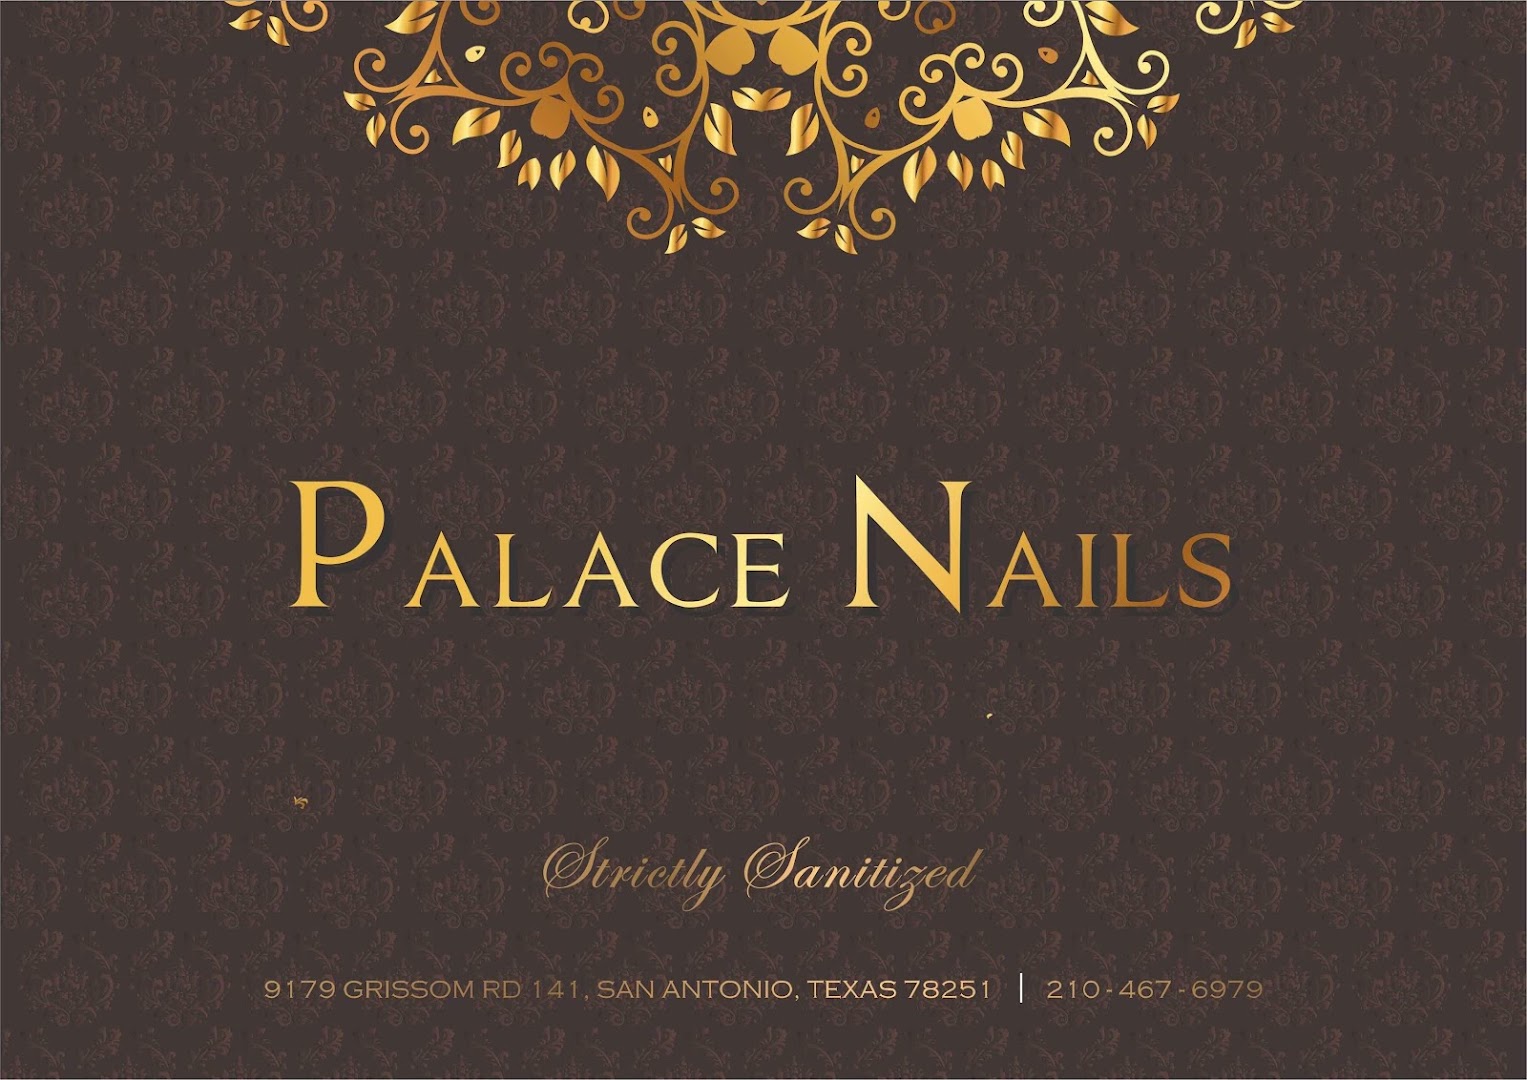 Palace Nails